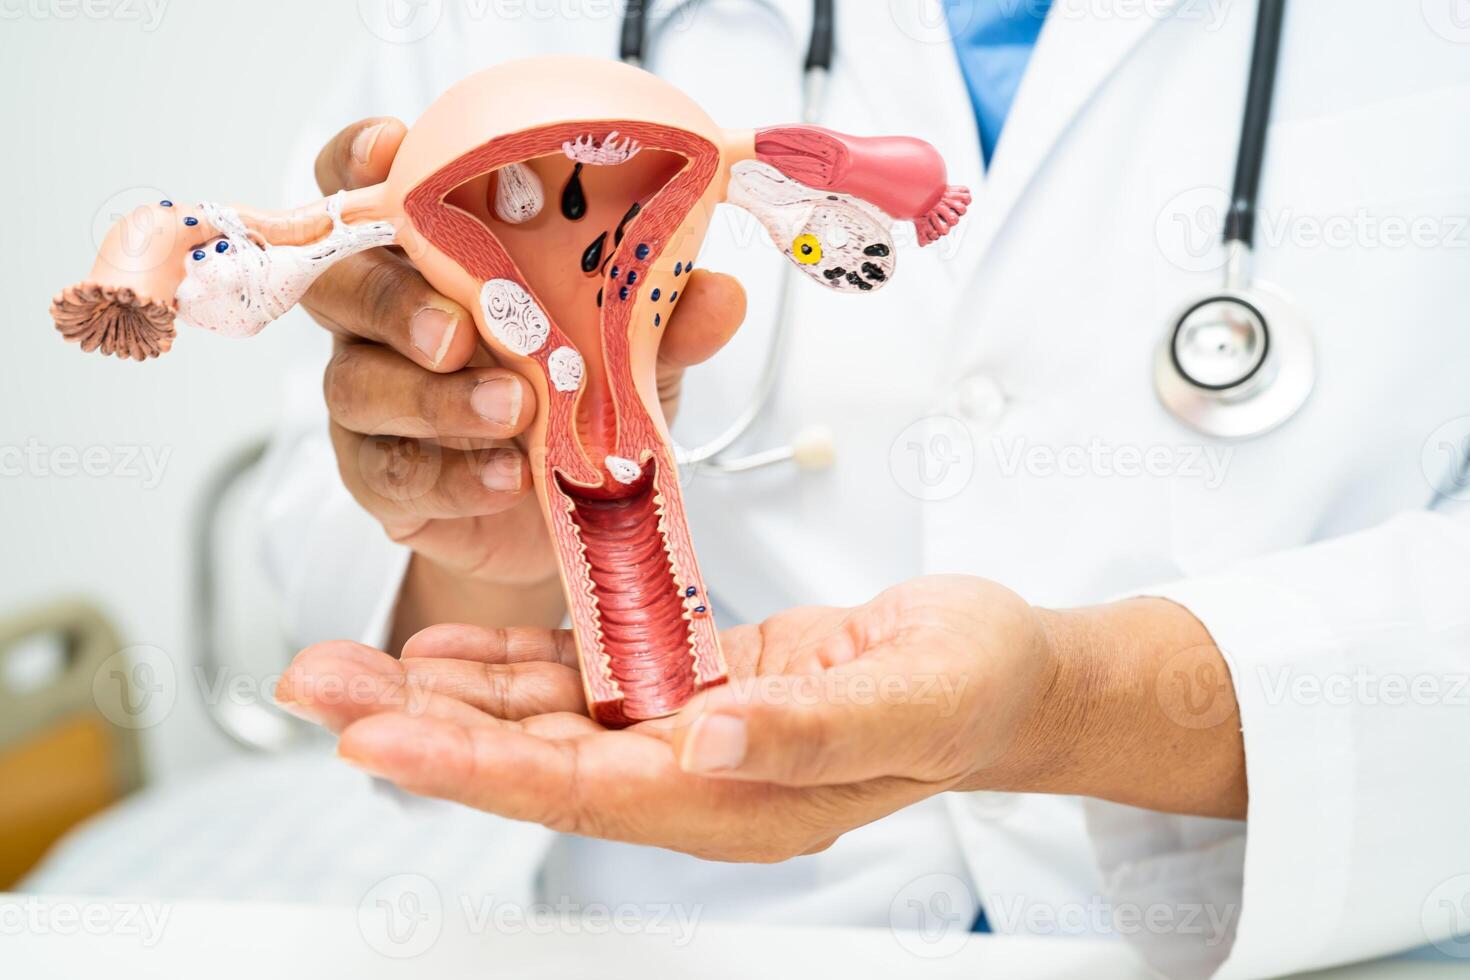 livmoder, läkare med anatomi modell för studie diagnos och behandling i sjukhus. foto